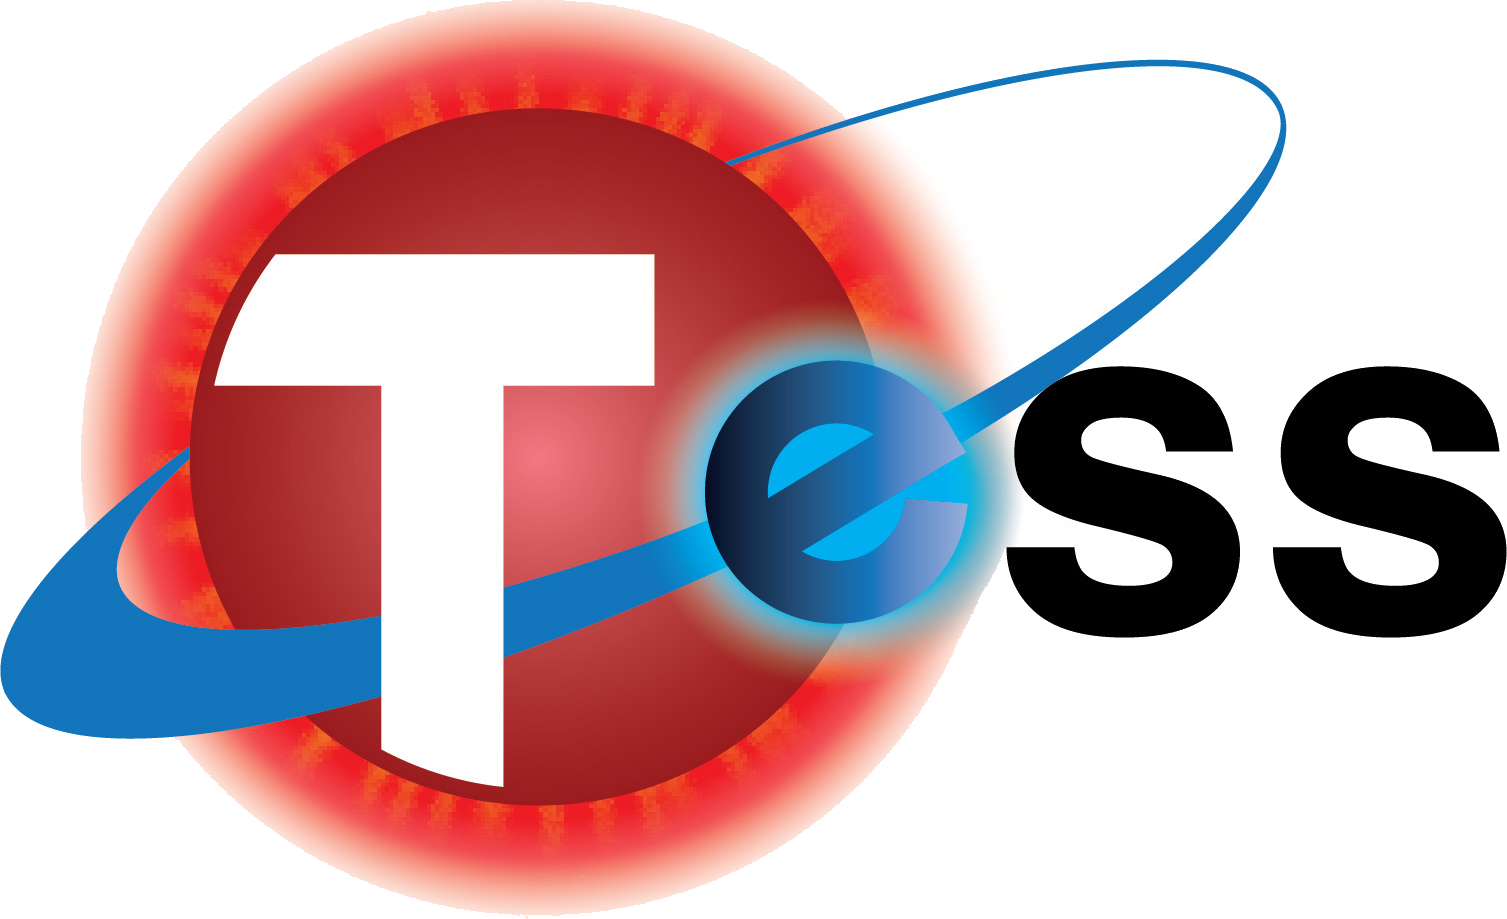 NASA TESS Mission